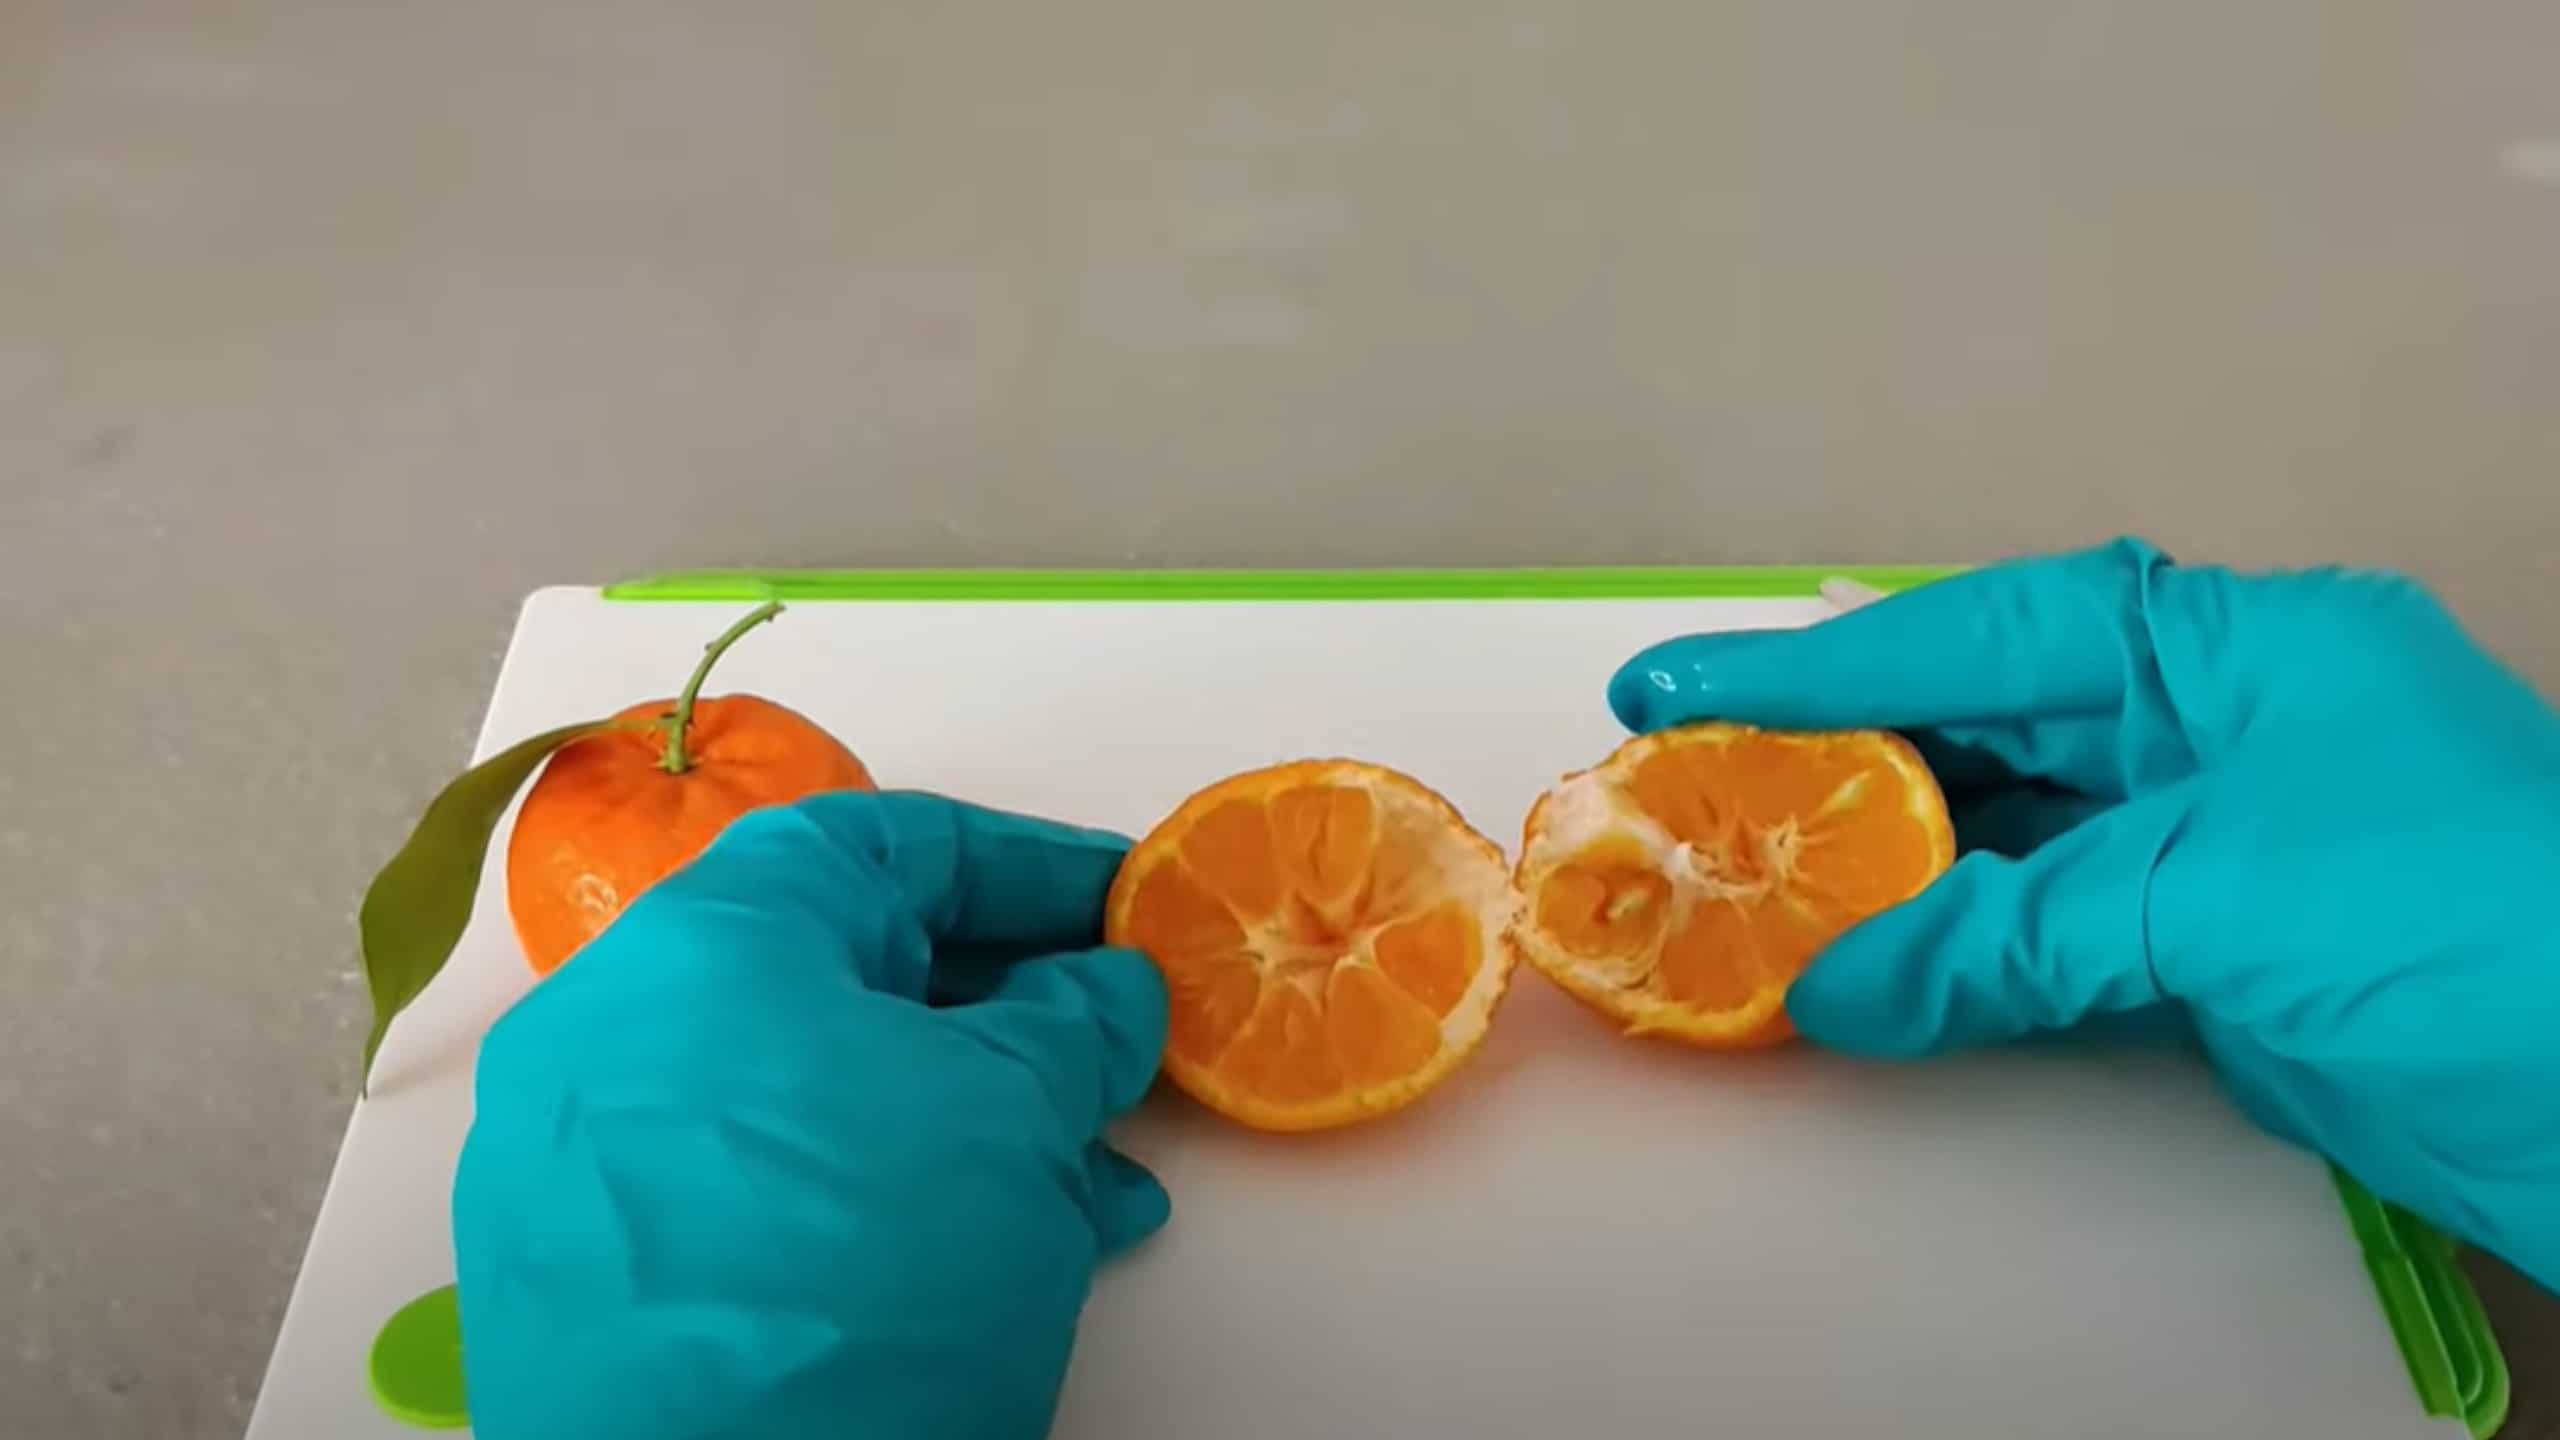 Non comprate più mandarini: ecco come piantarli in casa per averne a volontà